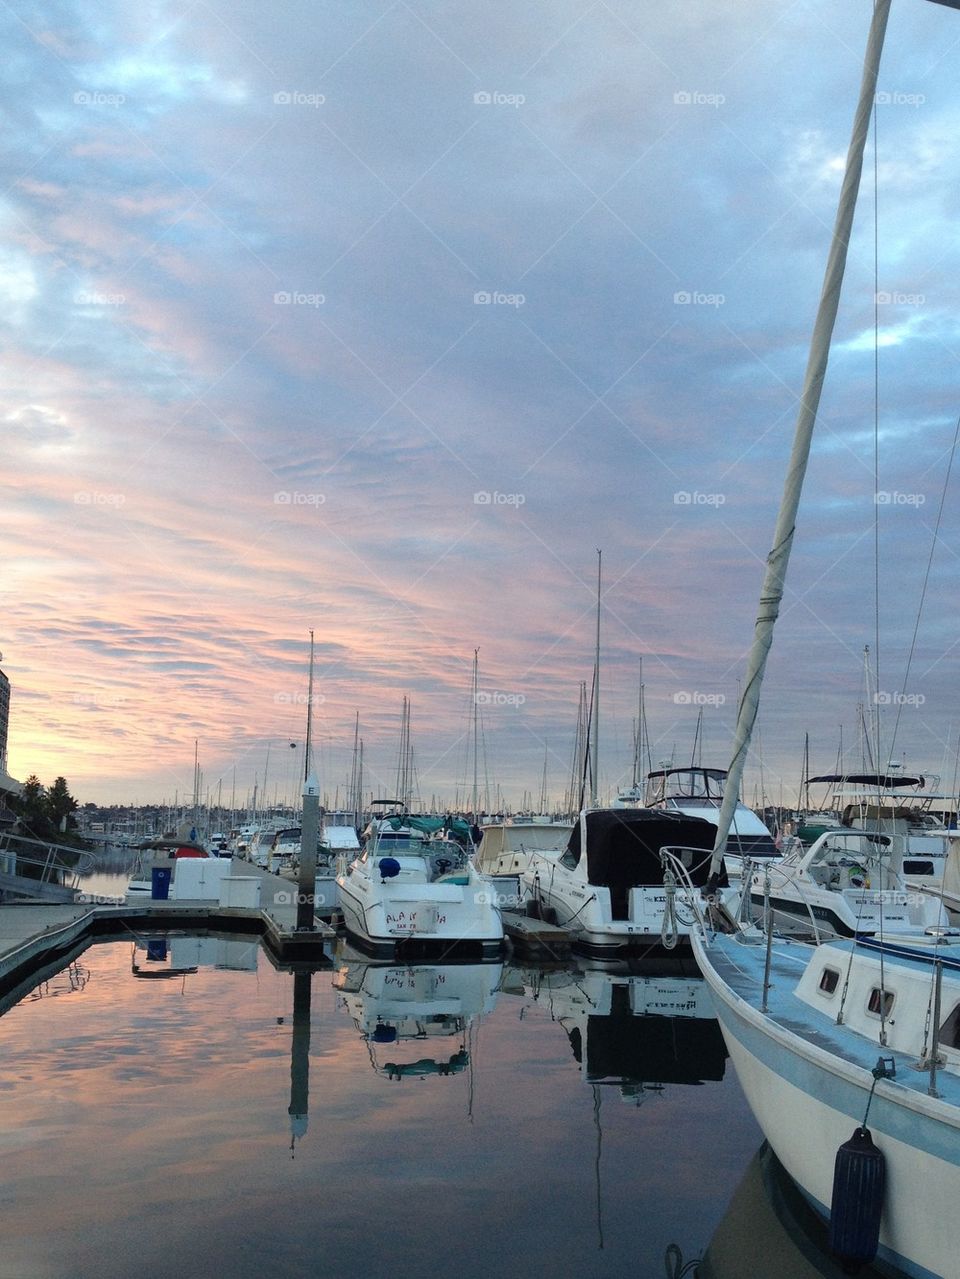 Marina at sunset